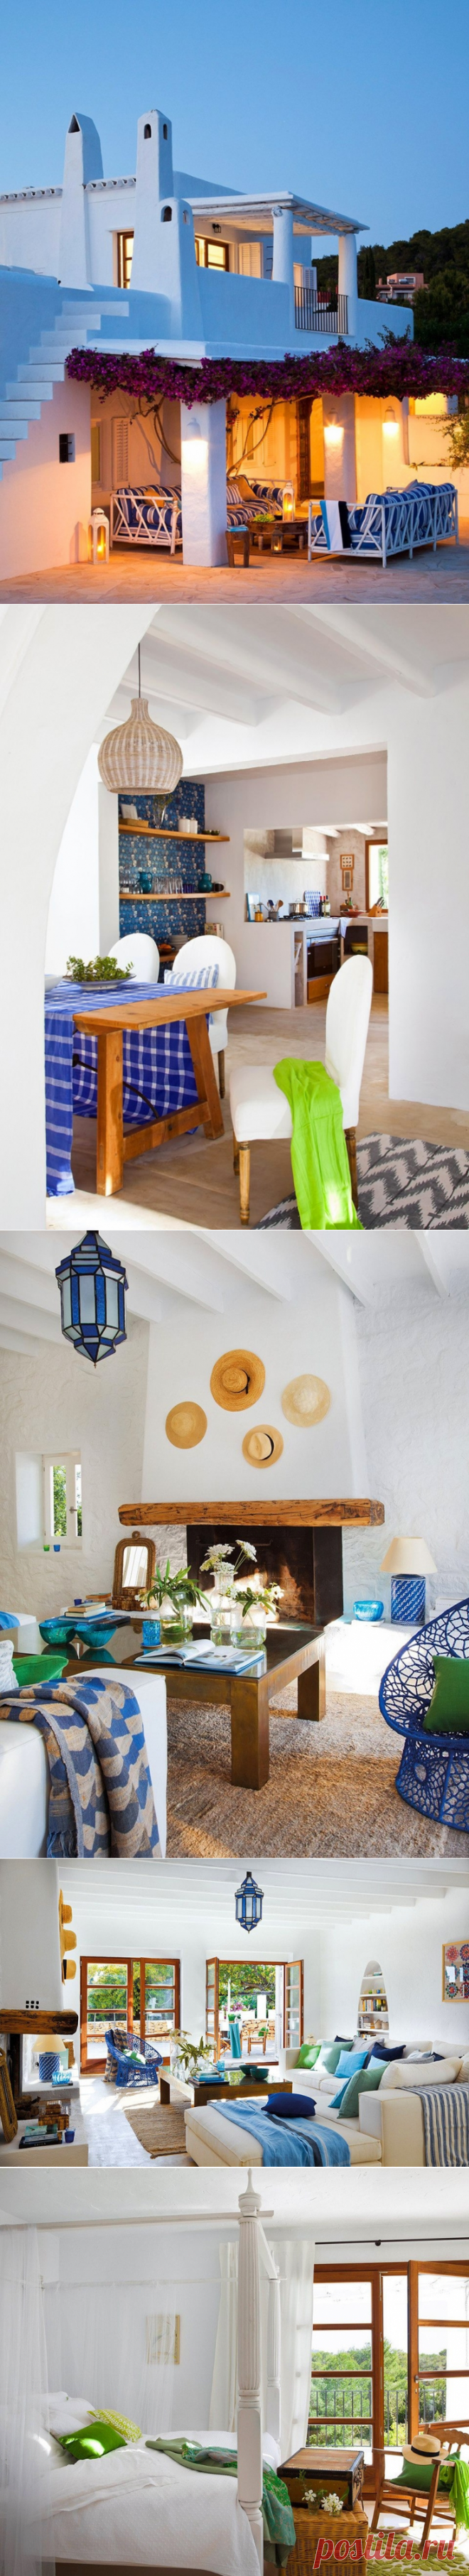 Дом на Ибице в средиземноморском стиле - Дизайн интерьеров | Идеи вашего дома | Lodgers